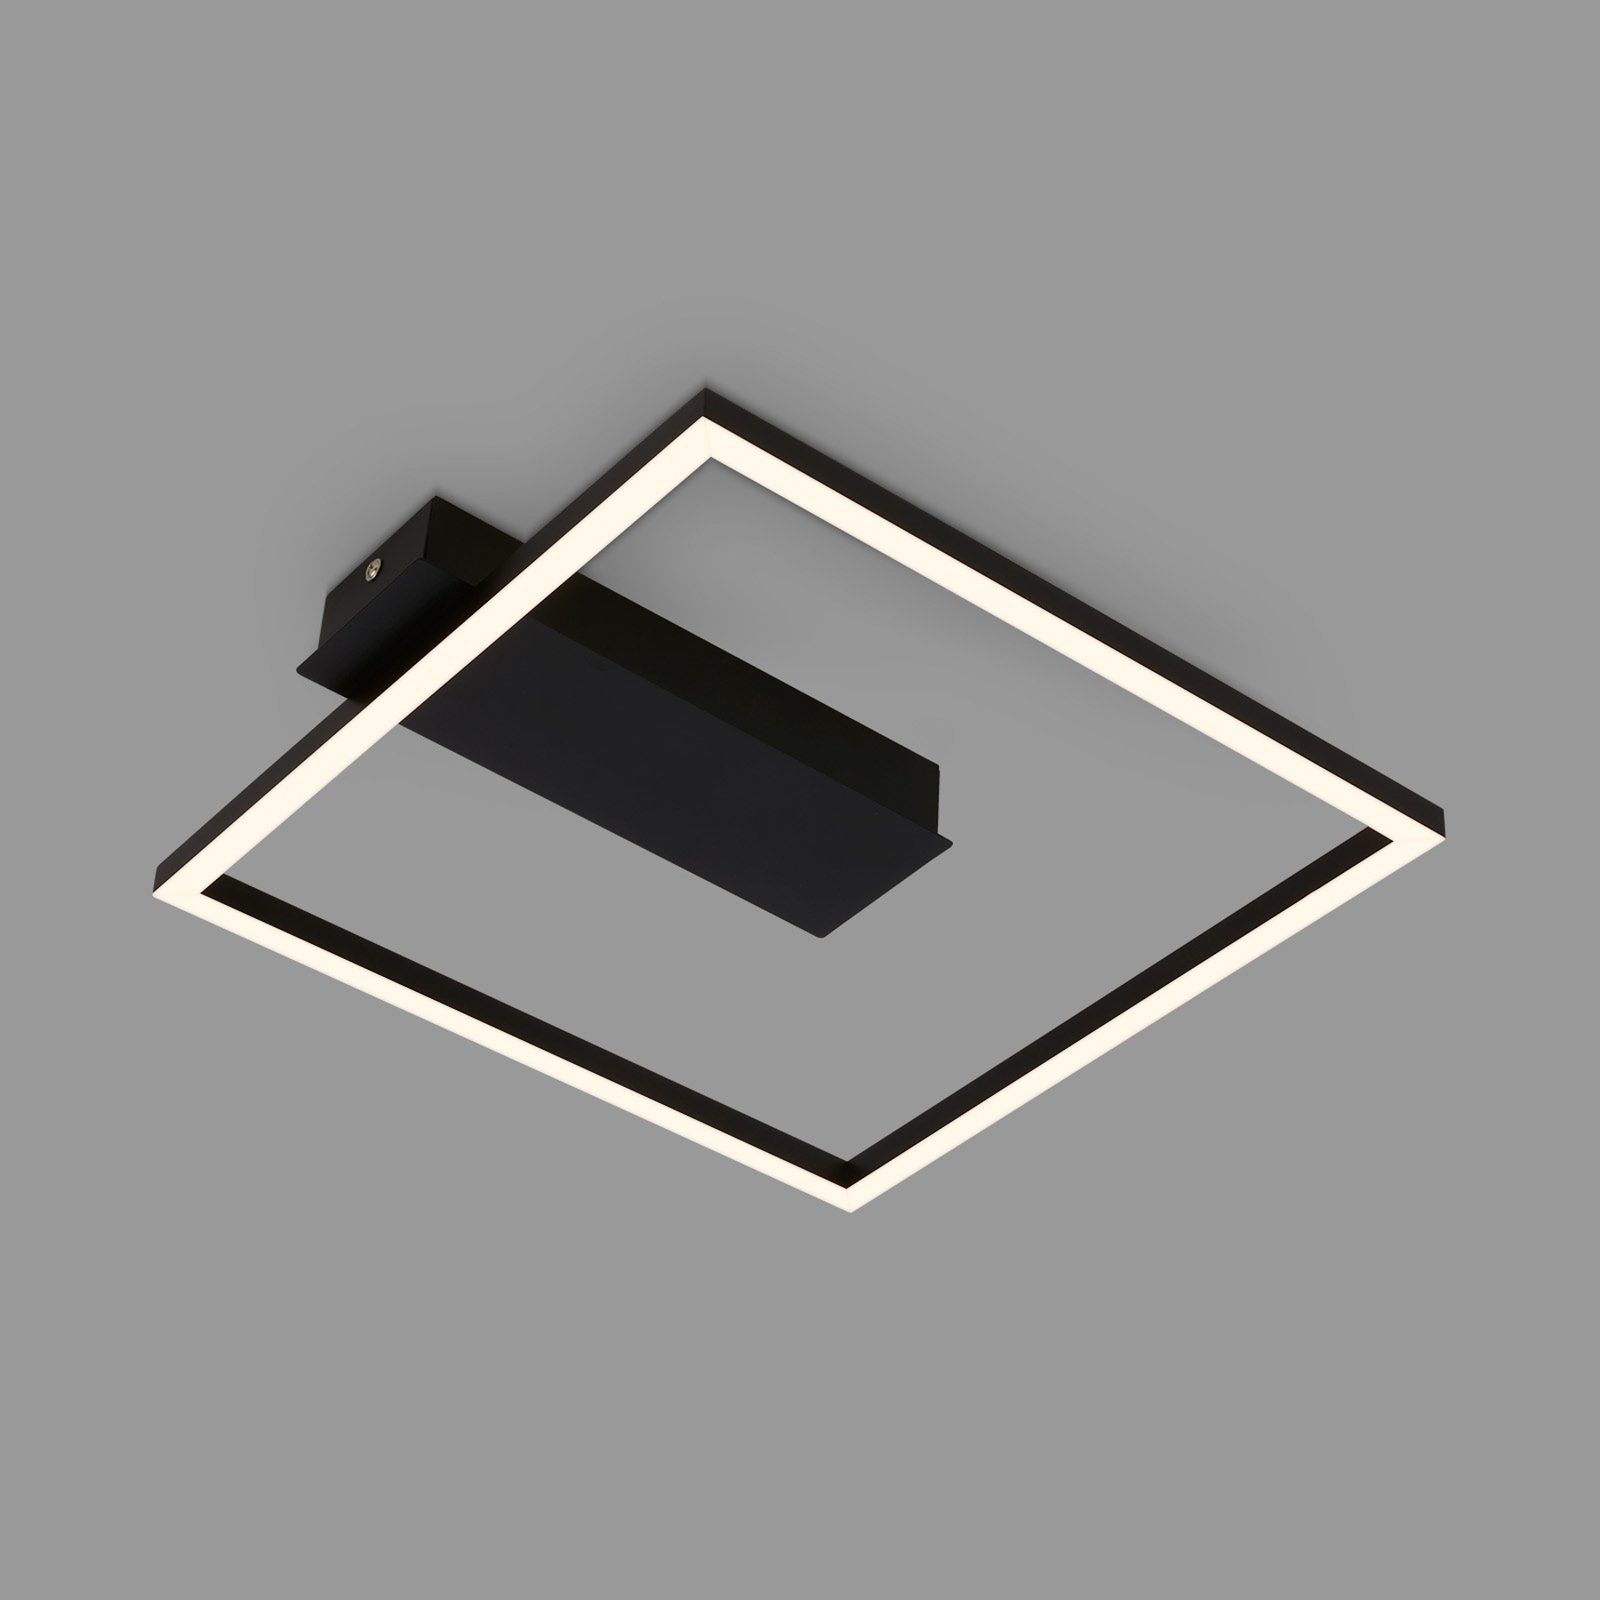 LED plafondlamp 3771 in framevorm, zwart